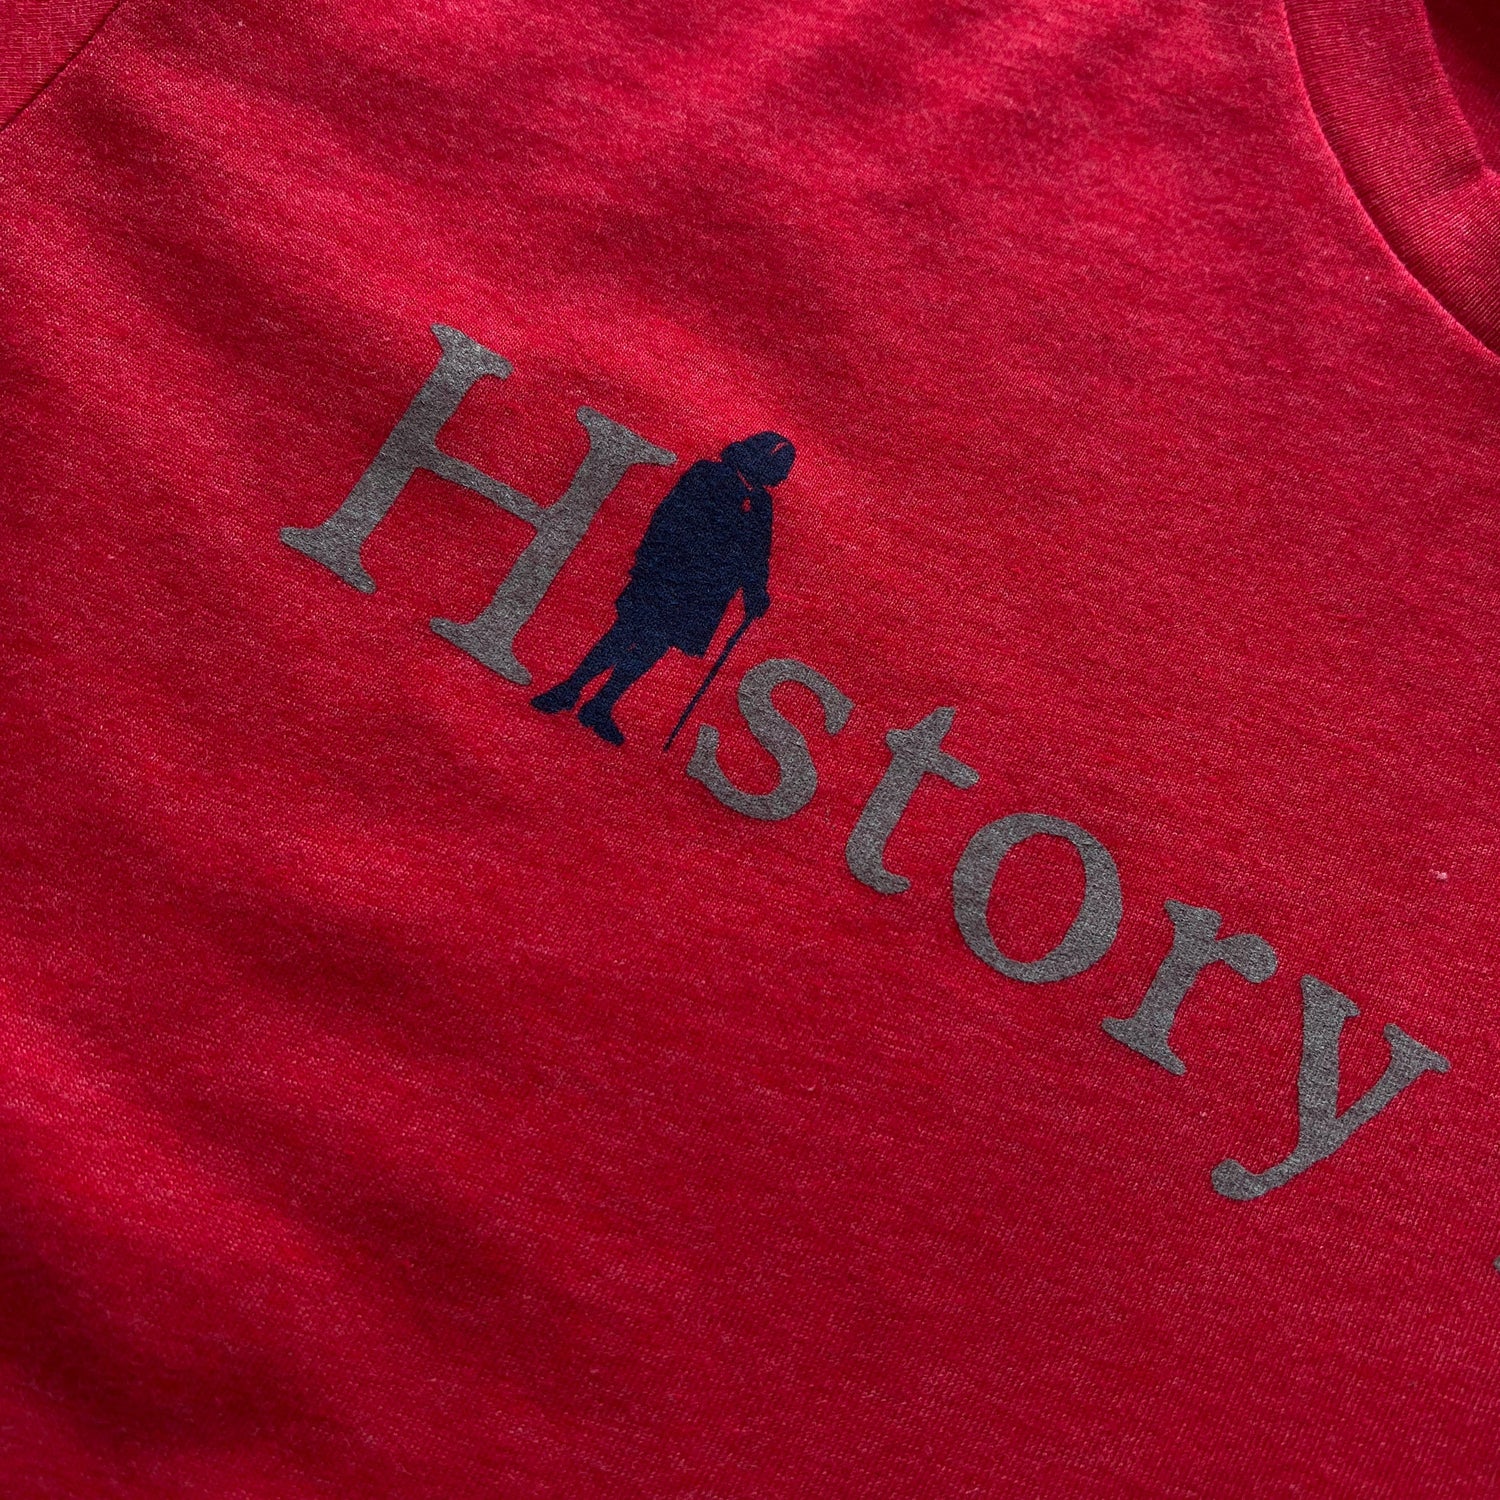 "History Nerd" shirts